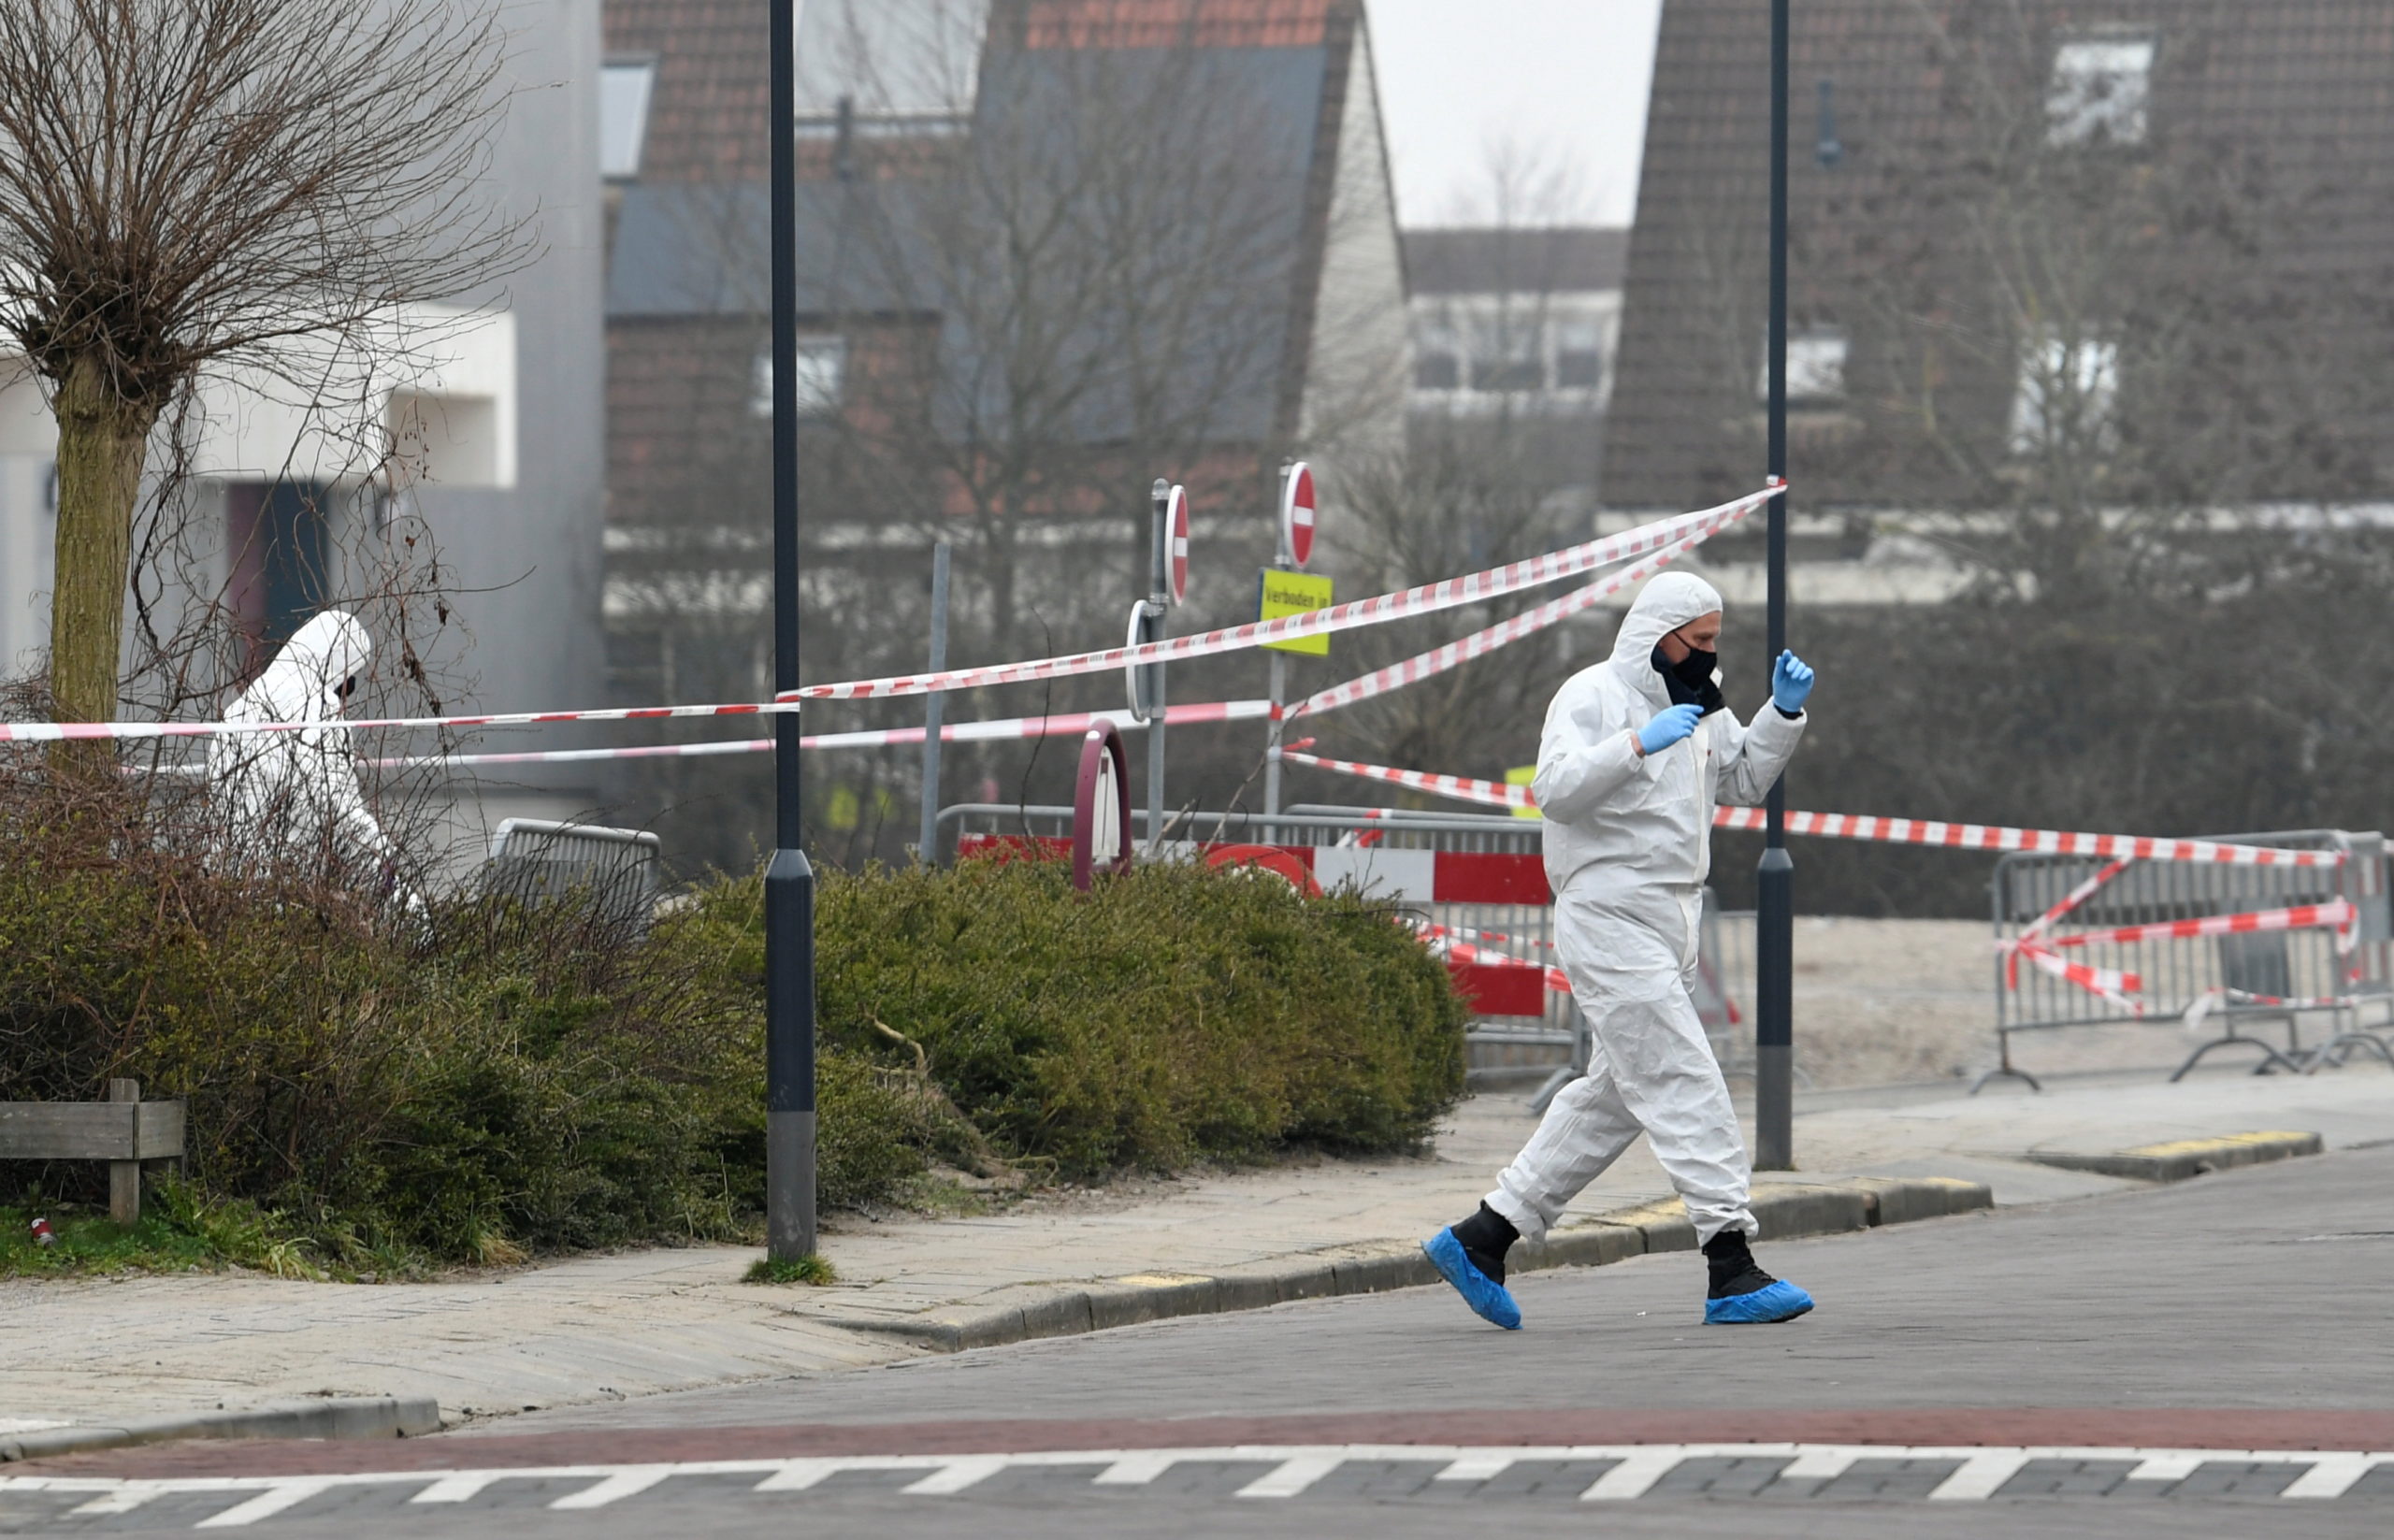 Pays-Bas: Explosion dans un centre de dépistage COVID-19, semble intentionnelle, selon la police